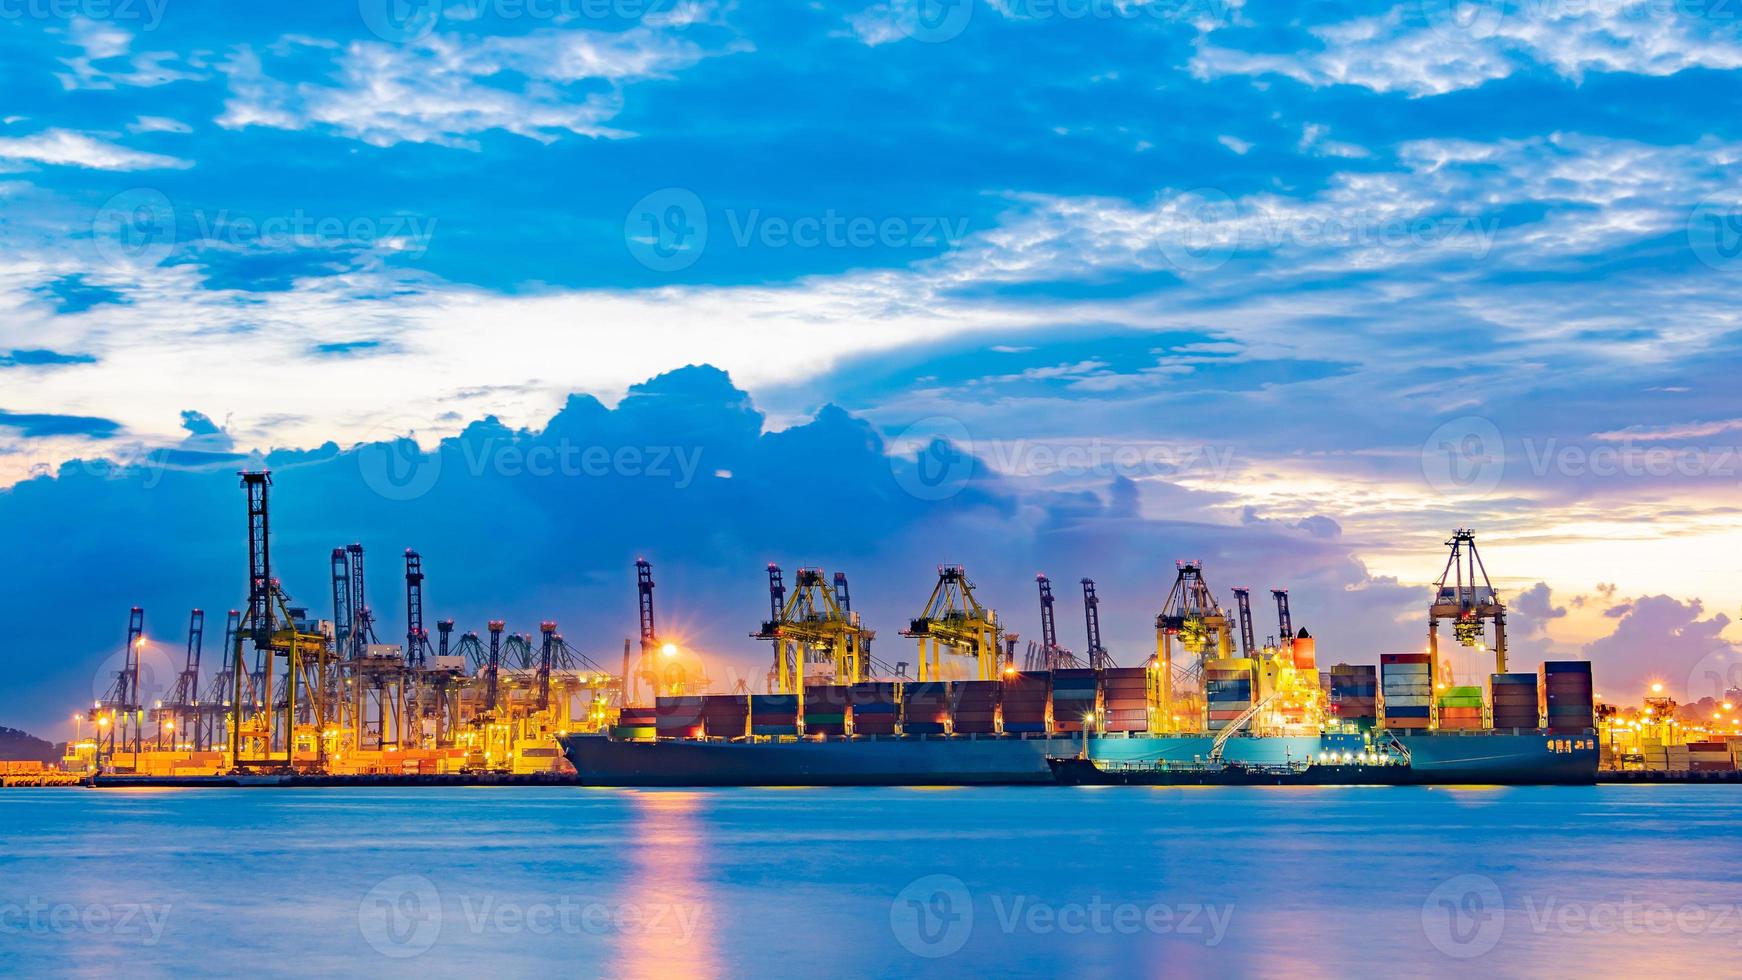 buque carguero cargando carga en el muelle de carga en el crepúsculo. Singapur, sudeste asiático. foto